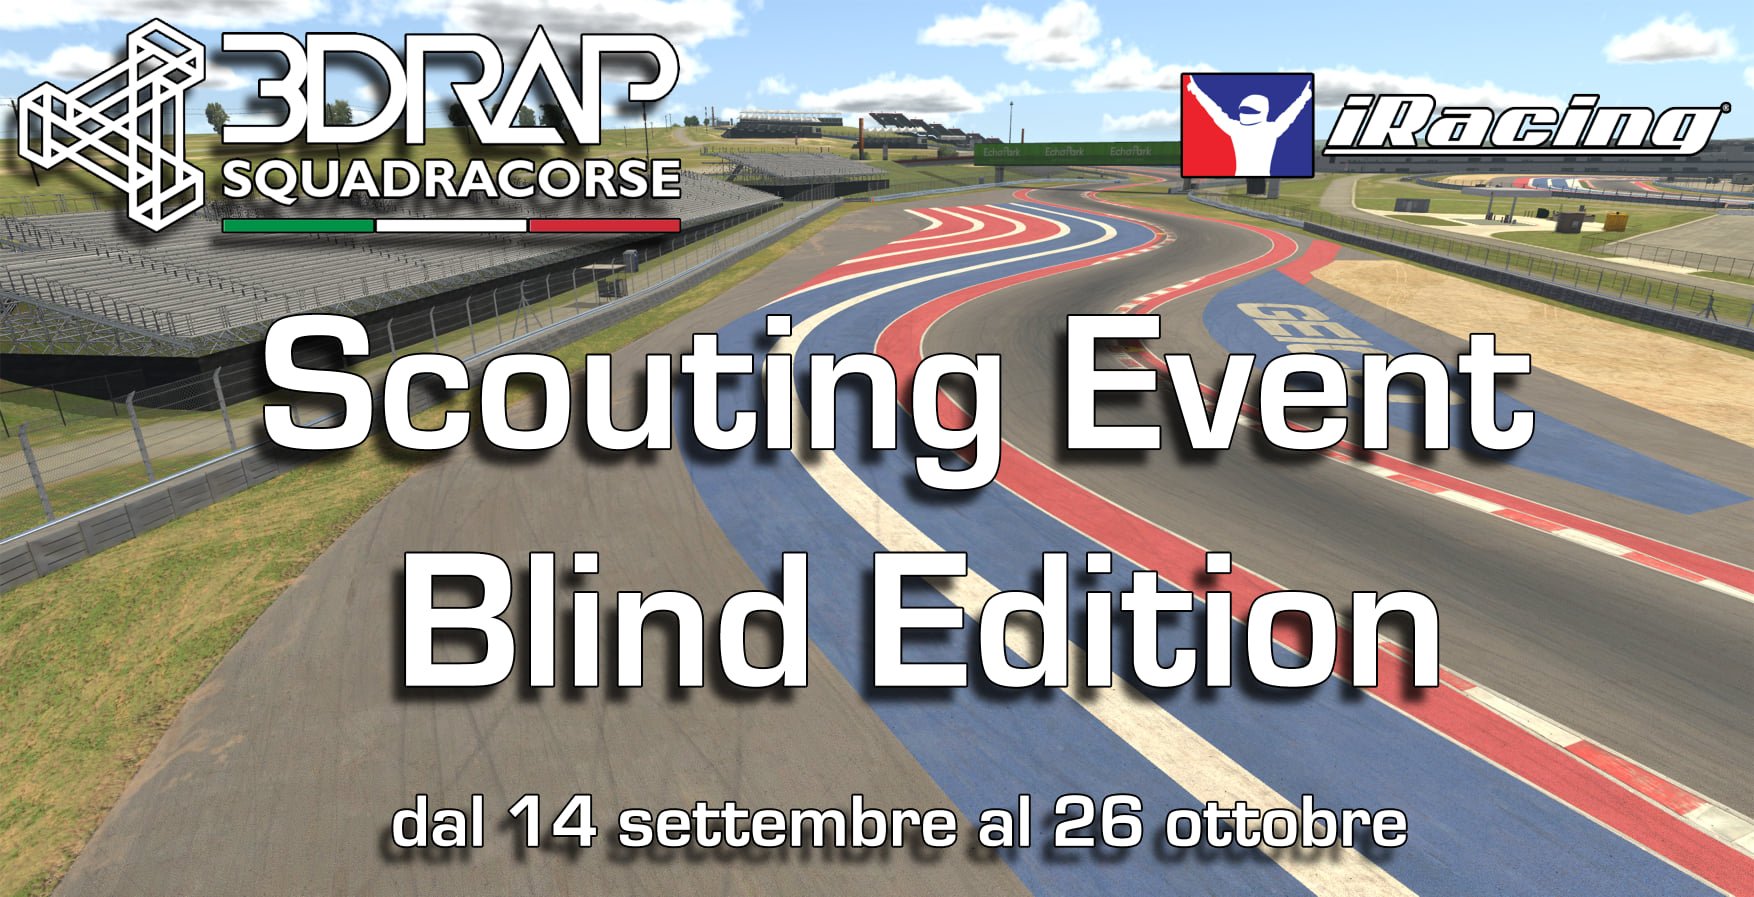 More information about "3DRap cerca nuovi piloti su iRacing per il suo team virtuale "Squadra Corse""